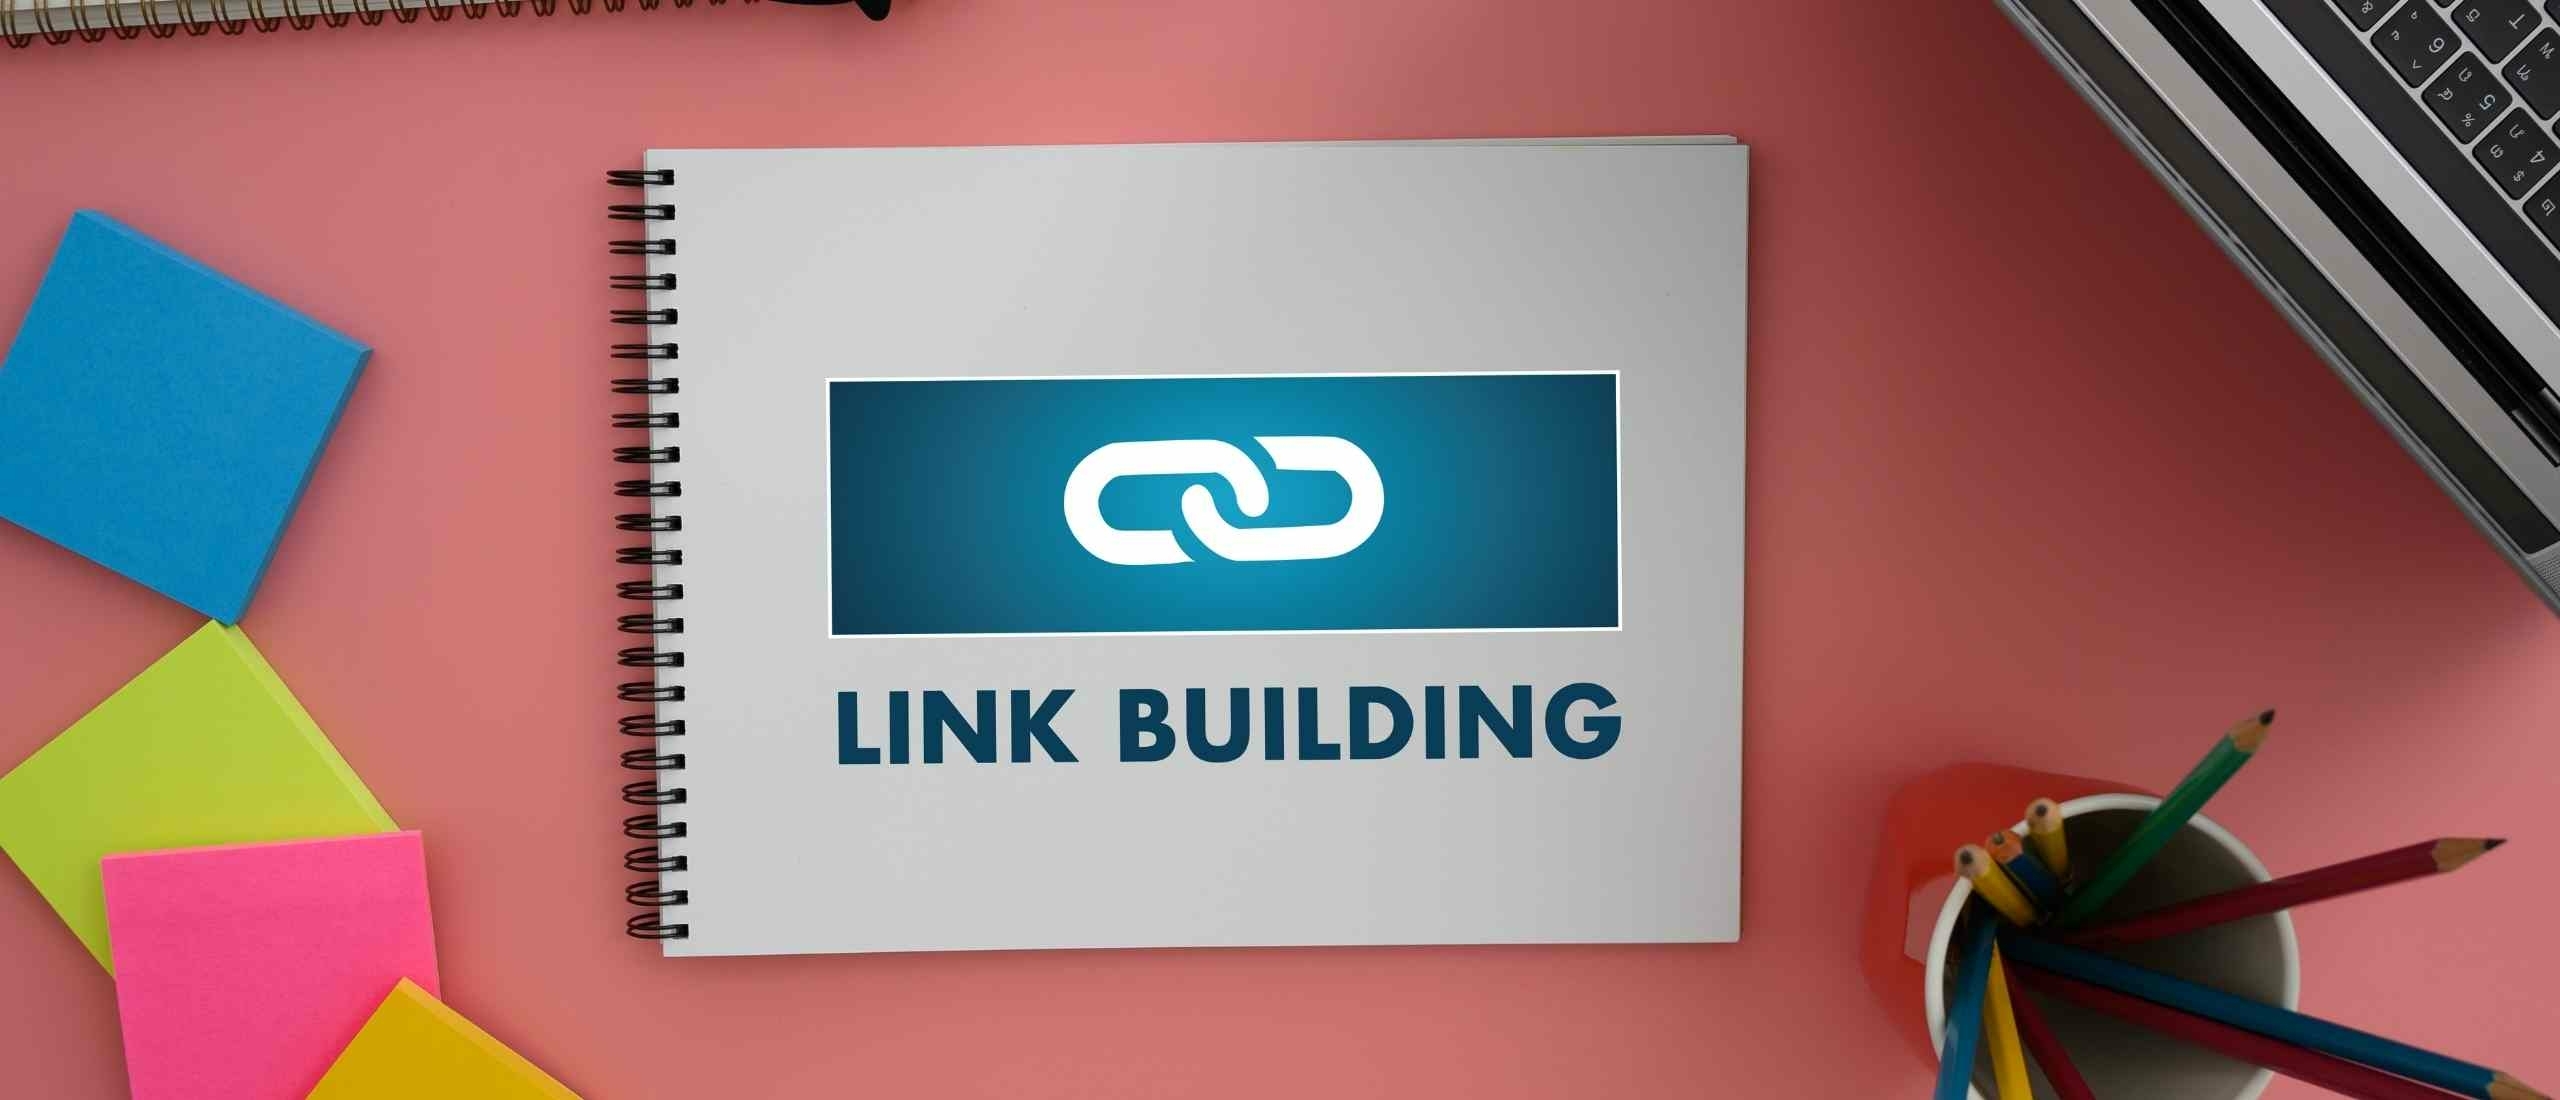 linkbuilding-8-veilige-manieren-om-betere-links-naar-je-site-te-krijgen